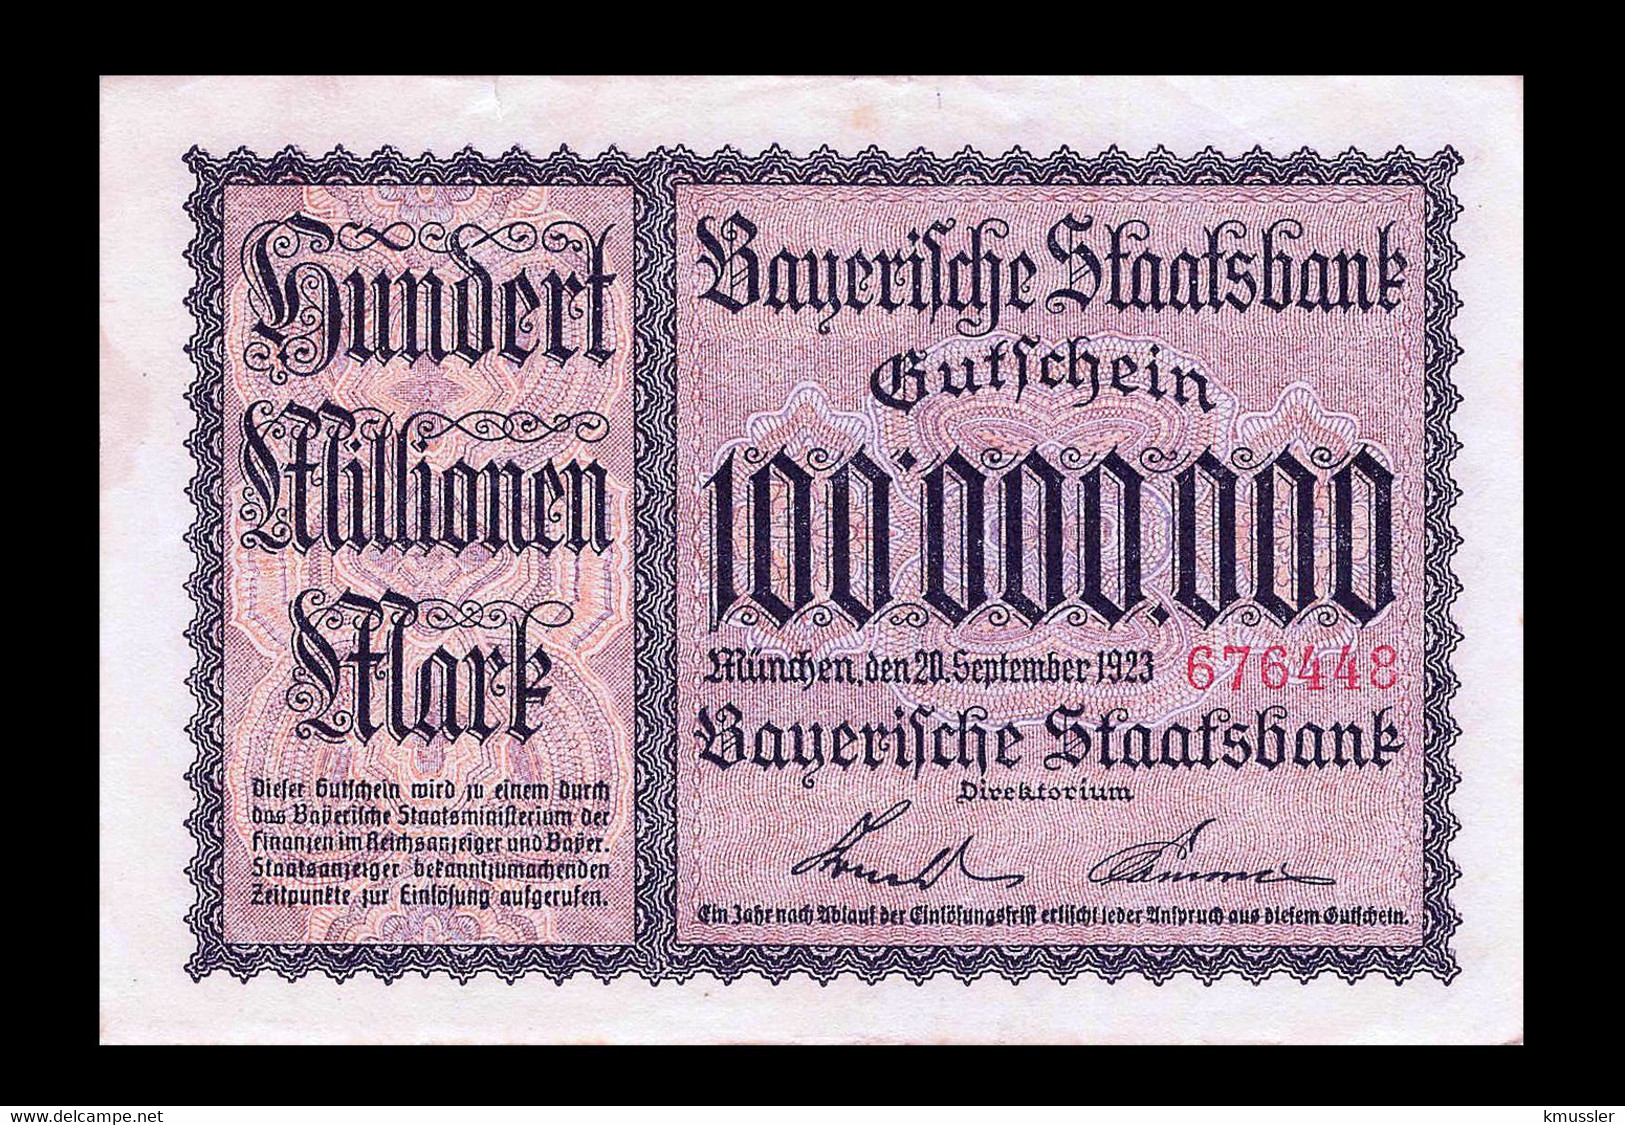 # # # Banknote Bayerische Staatsbank 100.000.000 Mark 1923 UNC # # # - Non Classés